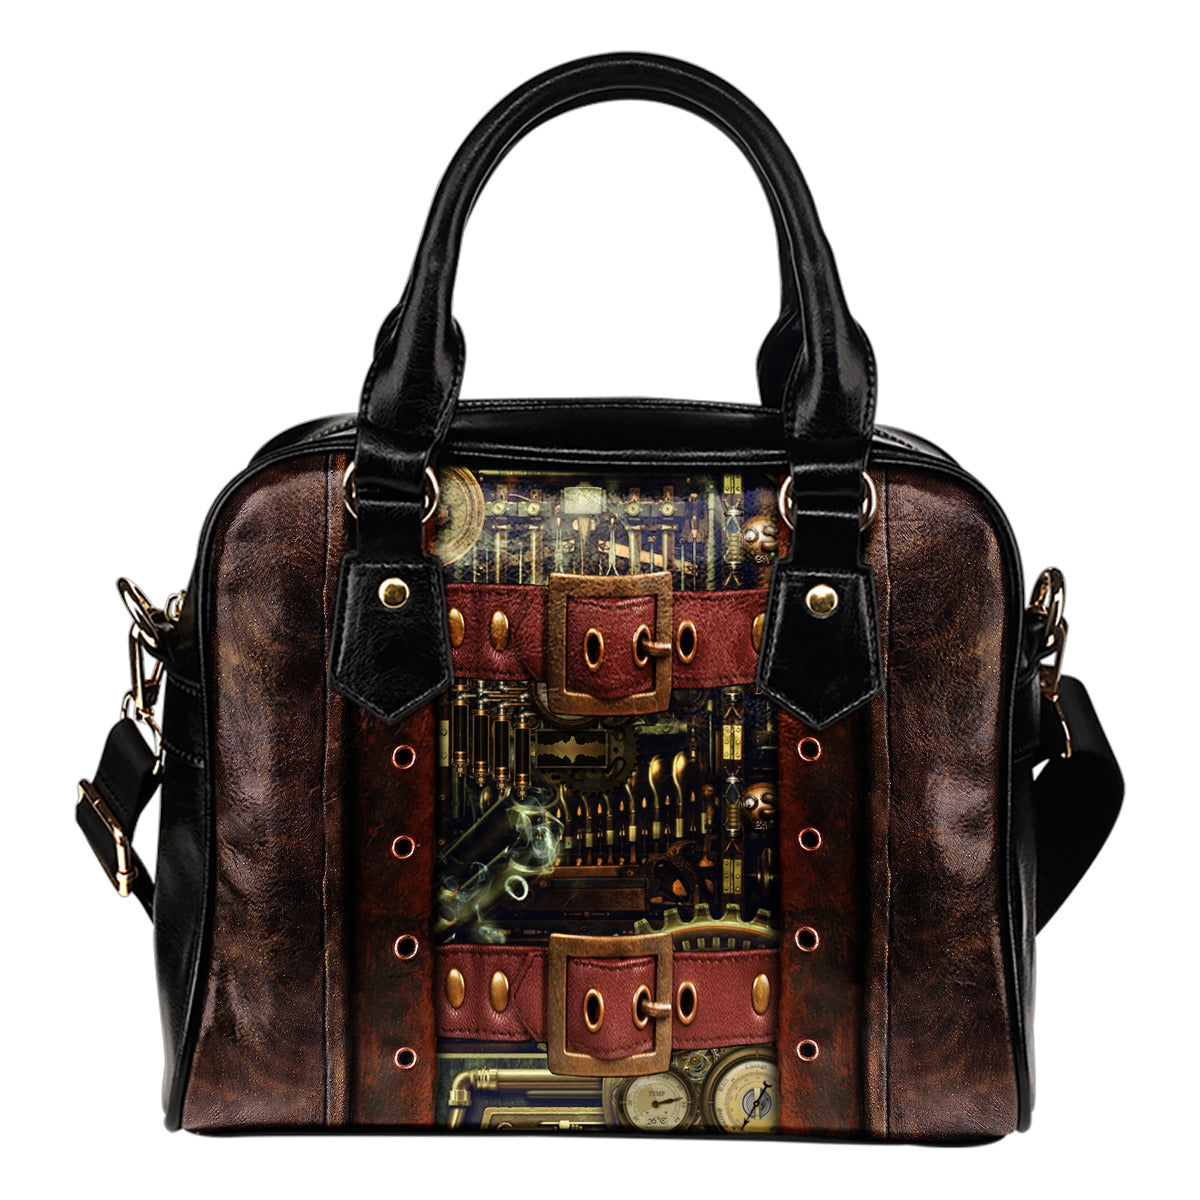 Steampunk With Buckles Shoulder Handbag